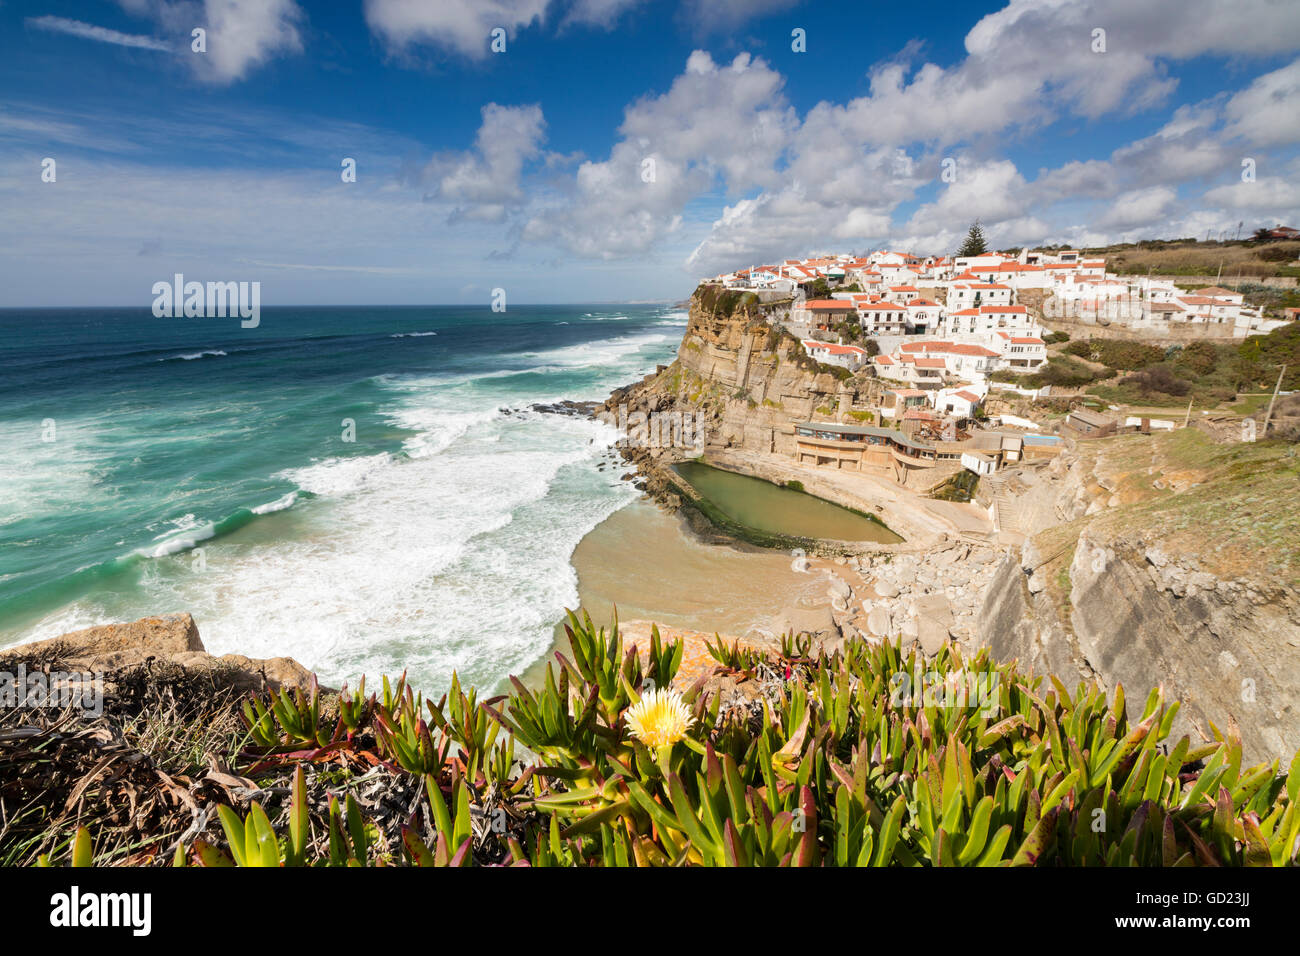 Vista superiore del borgo arroccato di Azenhas do Mar circondata dall' Oceano Atlantico e vegetazione verde, Sintra, Portogallo Foto Stock